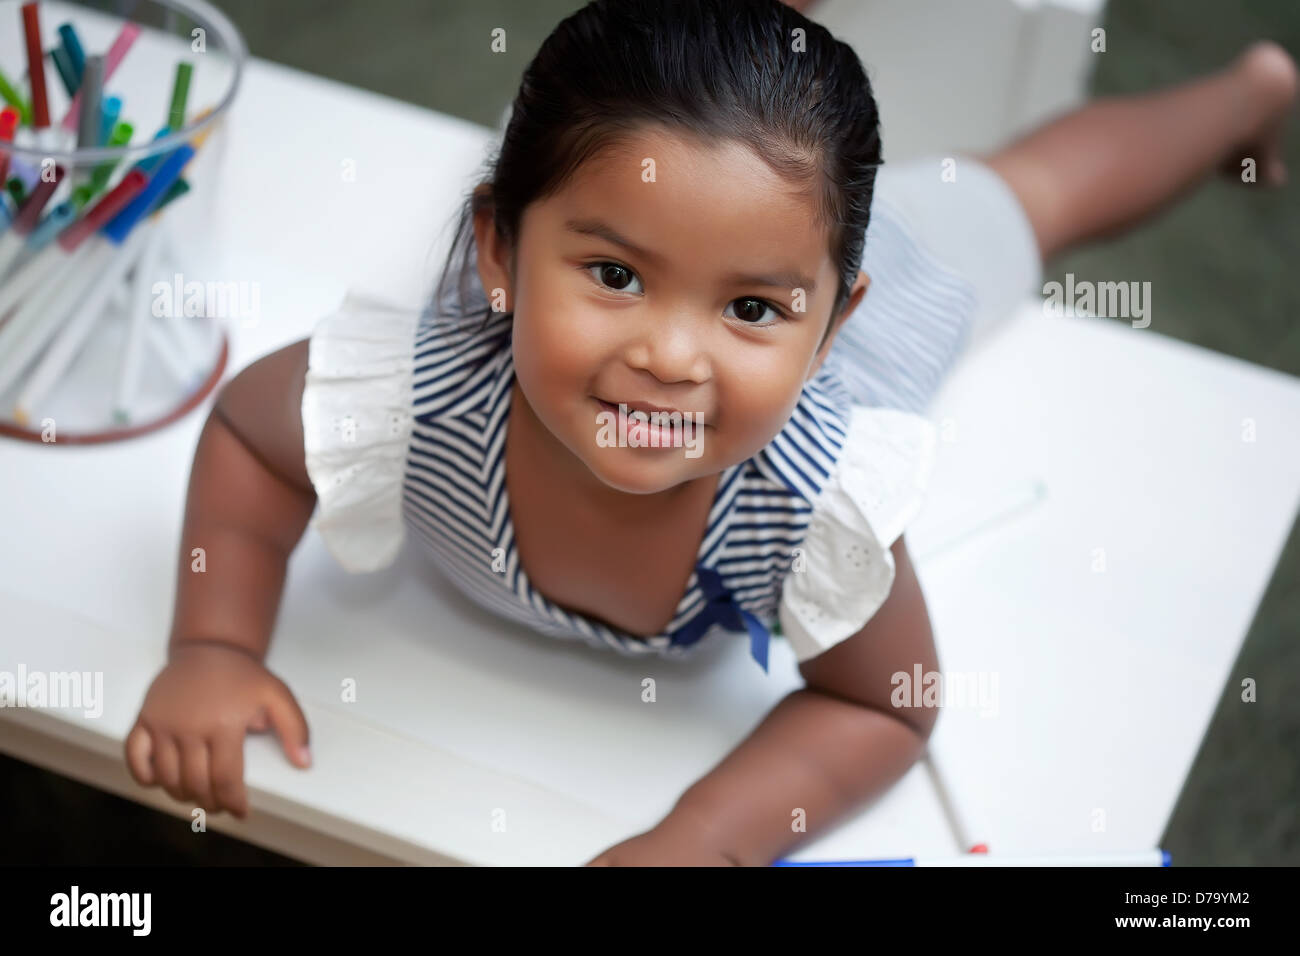 Latino Mädchen mit einem Lächeln legt sich auf weiße Vorgangstabelle mit Markern einfärben Stockfoto